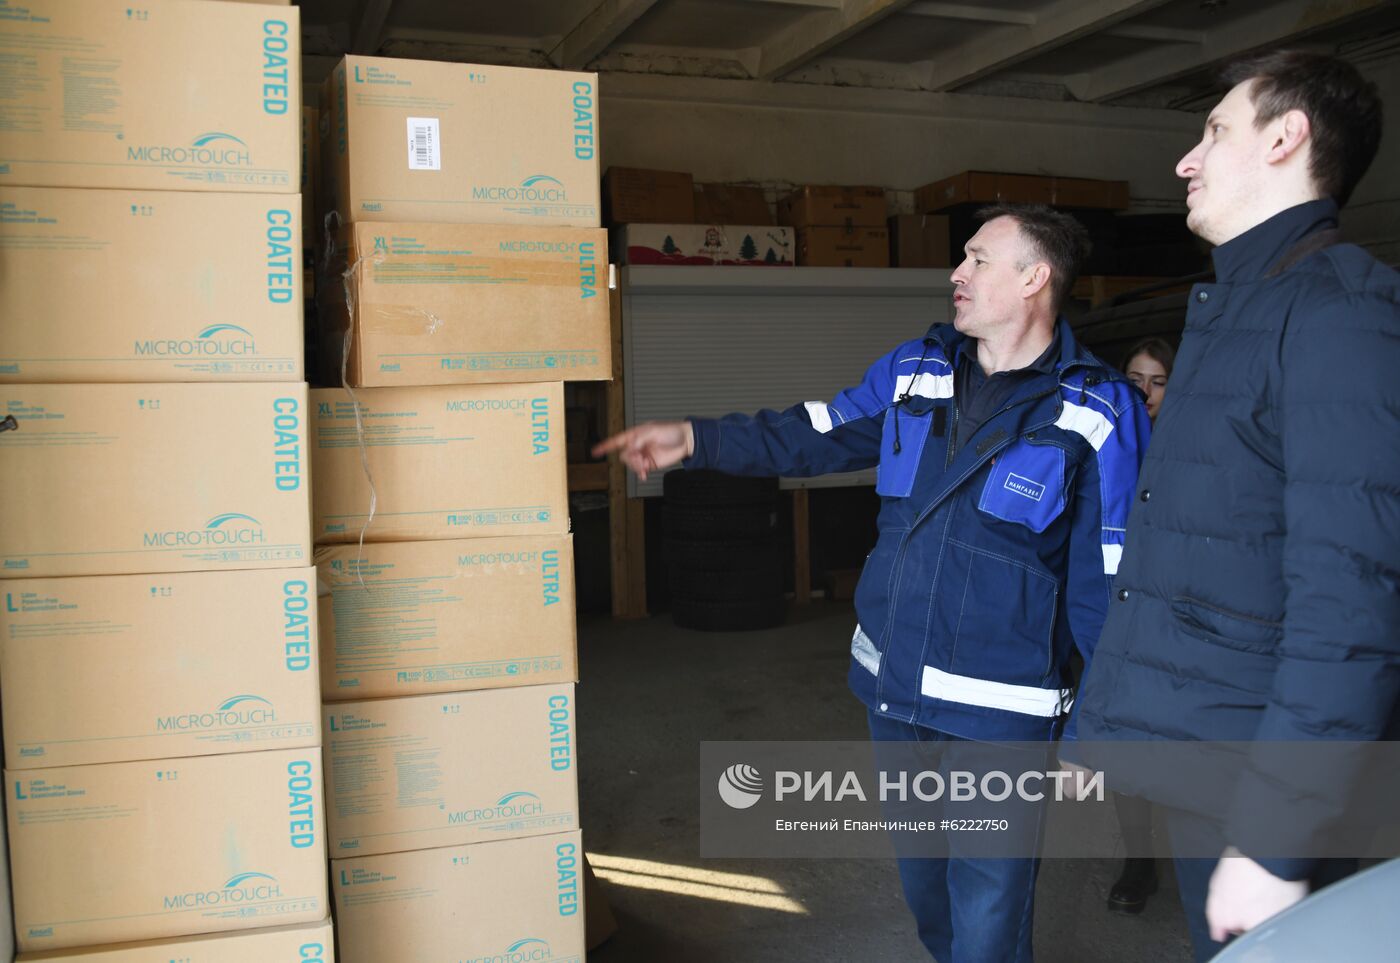 Партия гуманитарной помощи поступила в Забайкалье